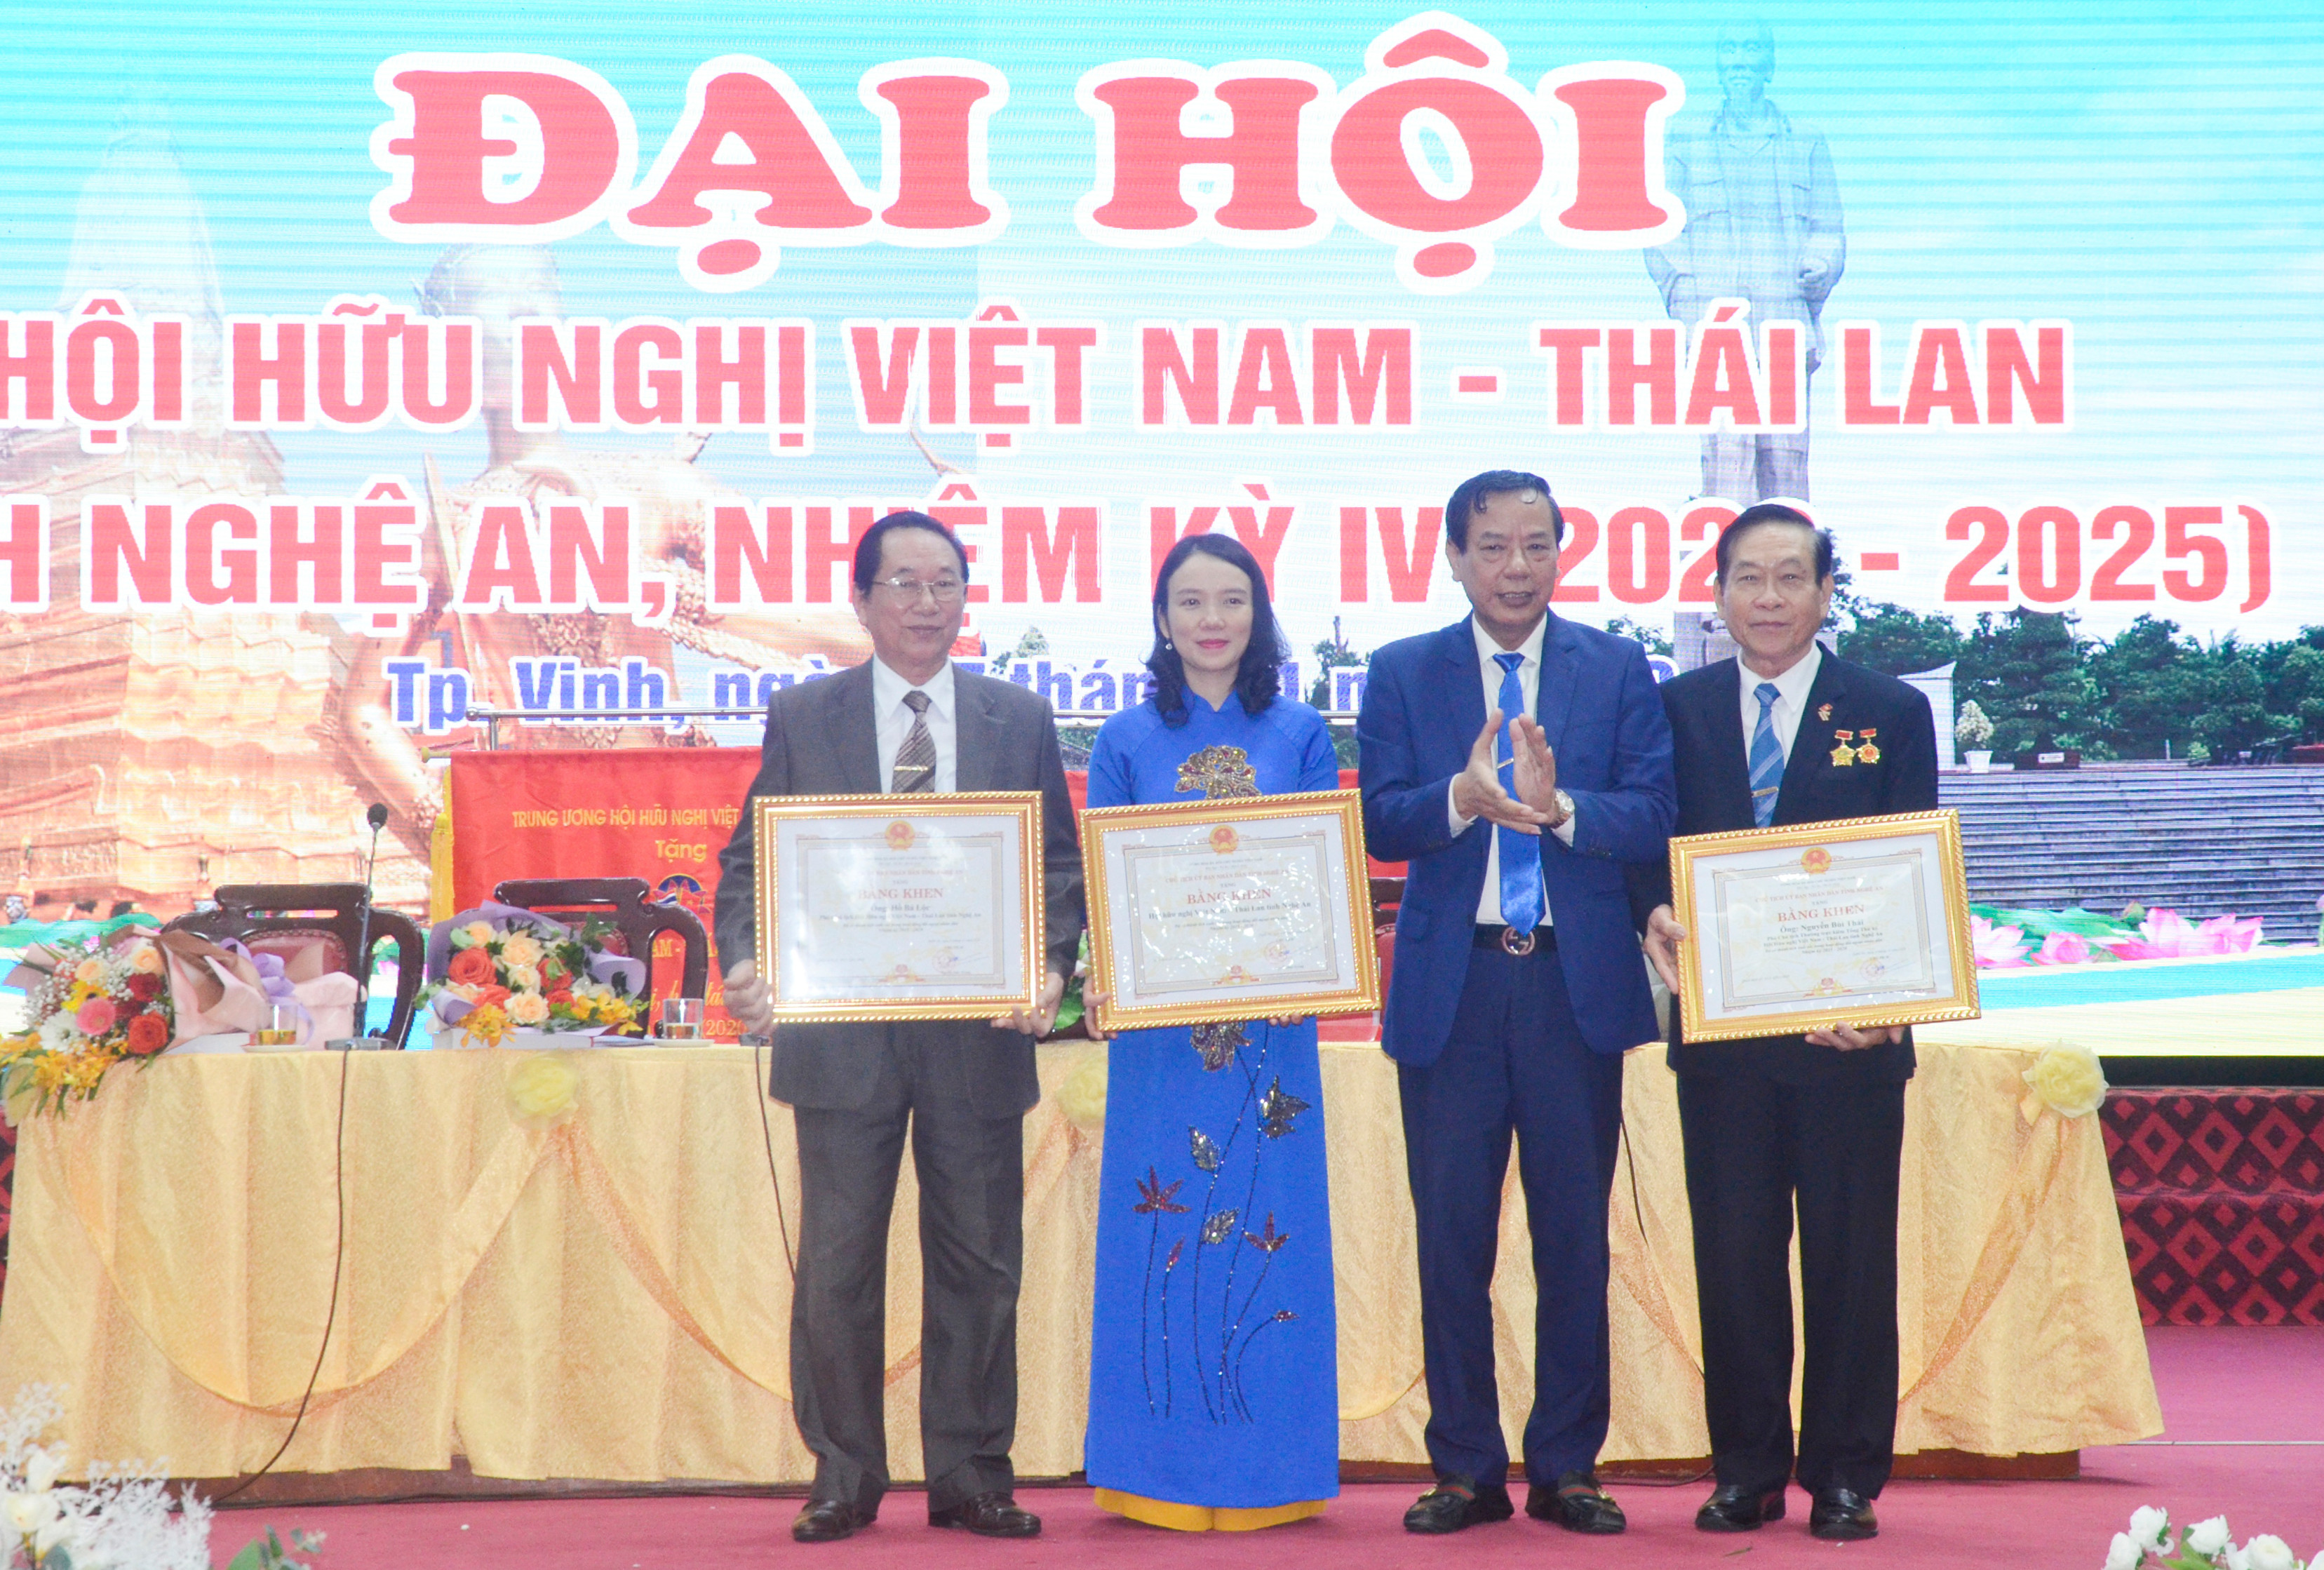 UBND tỉnh tặng Bằng khen cho tập thể và cá nhân của Hội hữu nghị Việt Nam - Thái Lan tỉnh Nghệ An. Ảnh: Thanh Lê